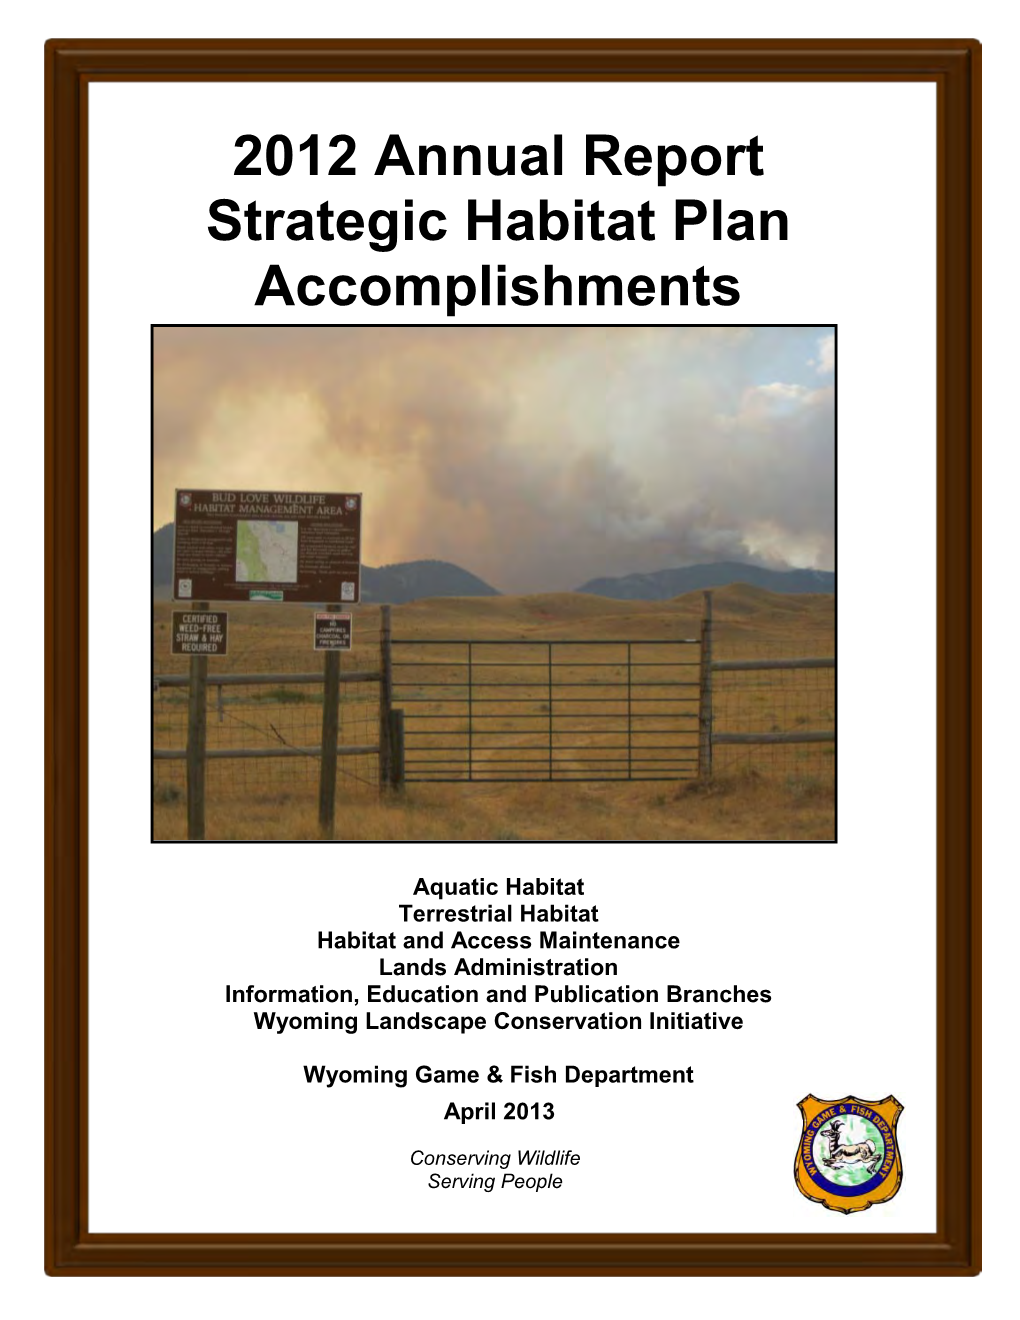 2012 Strategic Habitat Plan Annual Report